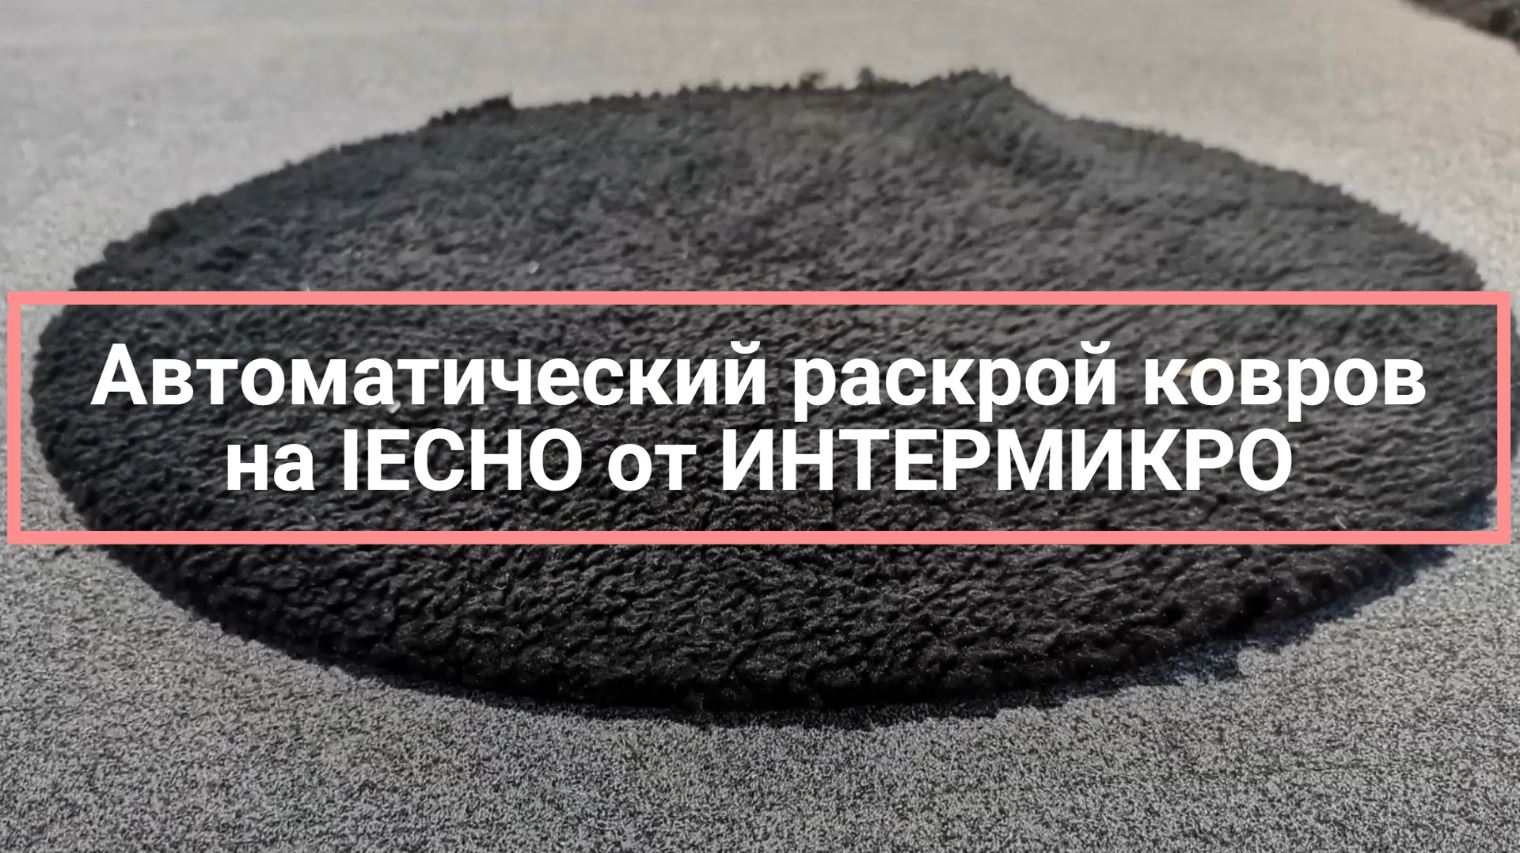 ИНТЕРМИКРО: раскрой ковров на IECHO TK ротационным инструментом PRT